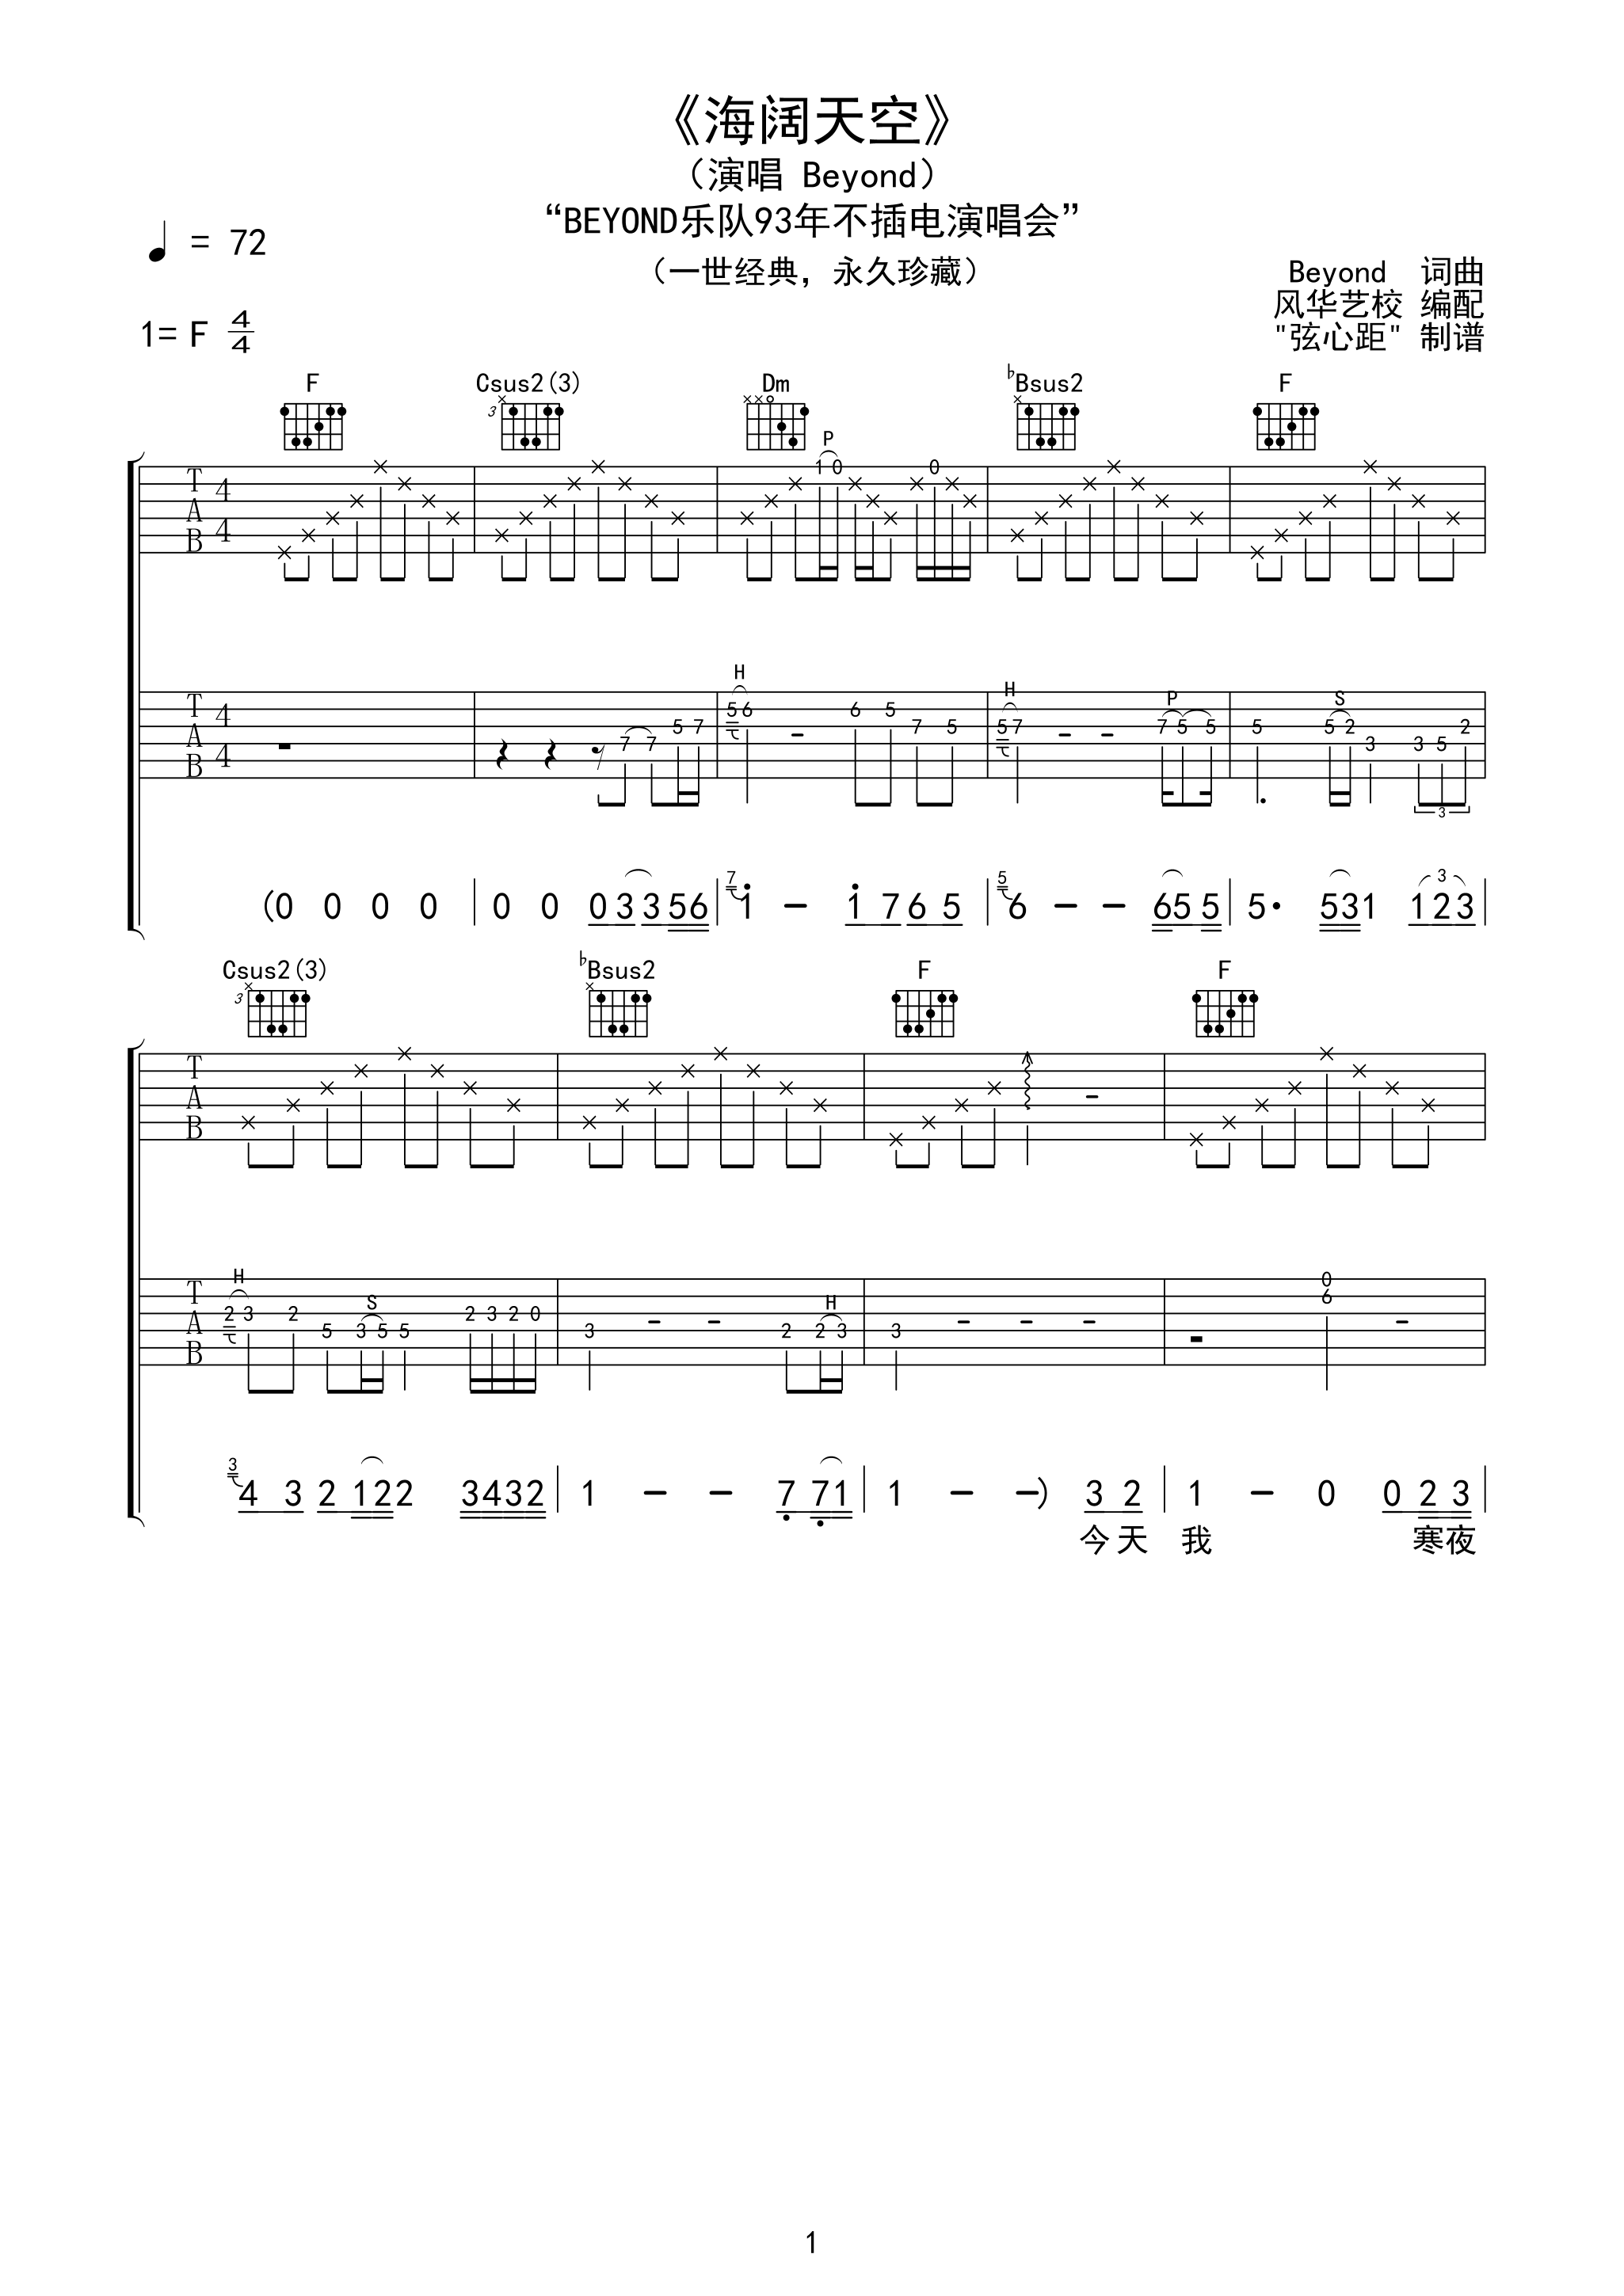 海阔天空吉他谱93版不插电弦心距出品吉他谱第(1)页